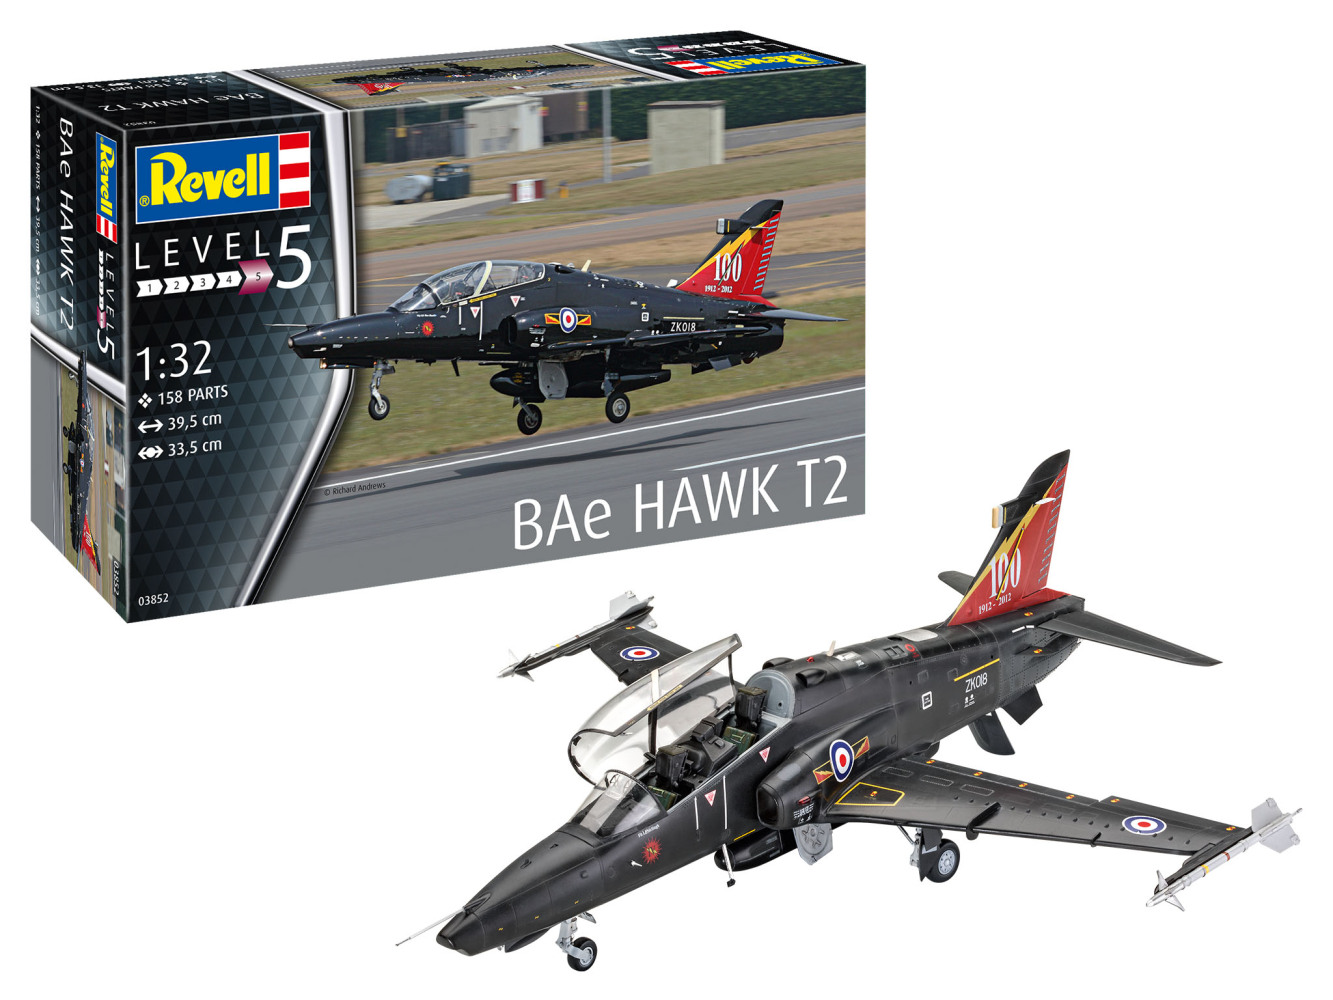 BAe Hawk T2 